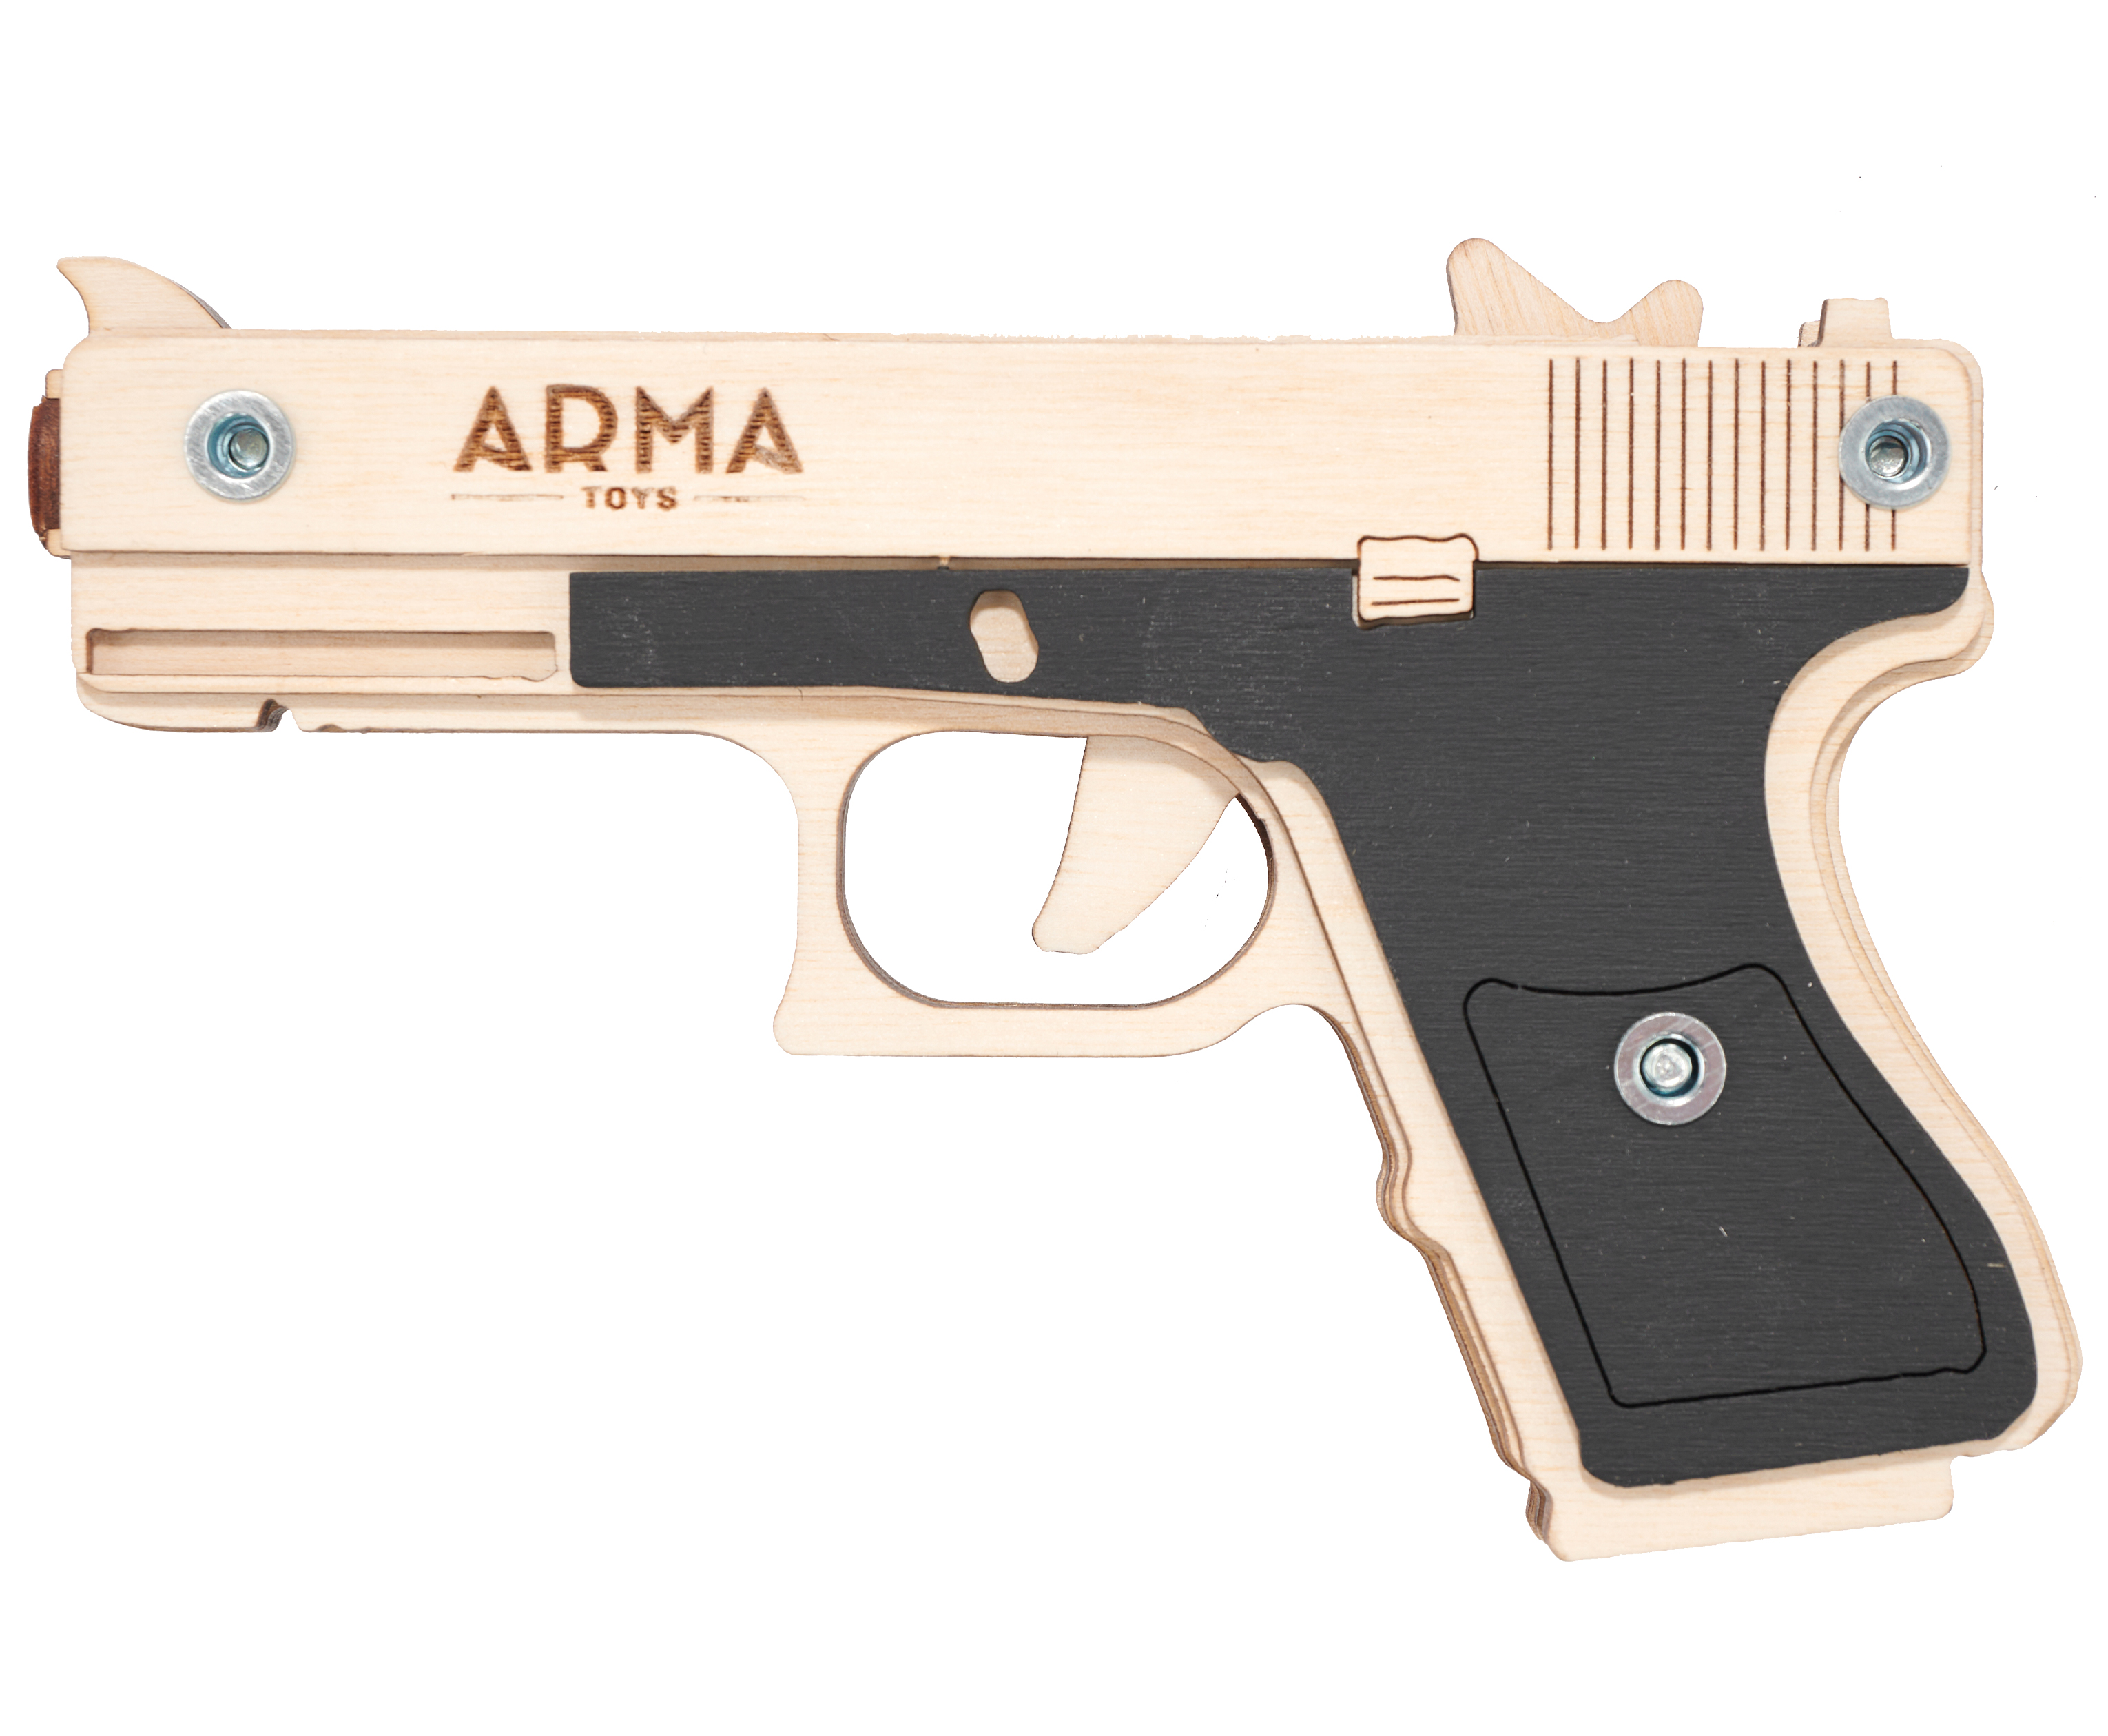 Резинкострел игрушечный Arma toys пистолет Glock Light макет, Глок 26, AT027, окрашенный резинкострел arma toys пистолет desert eagle макет окрашенный at010k